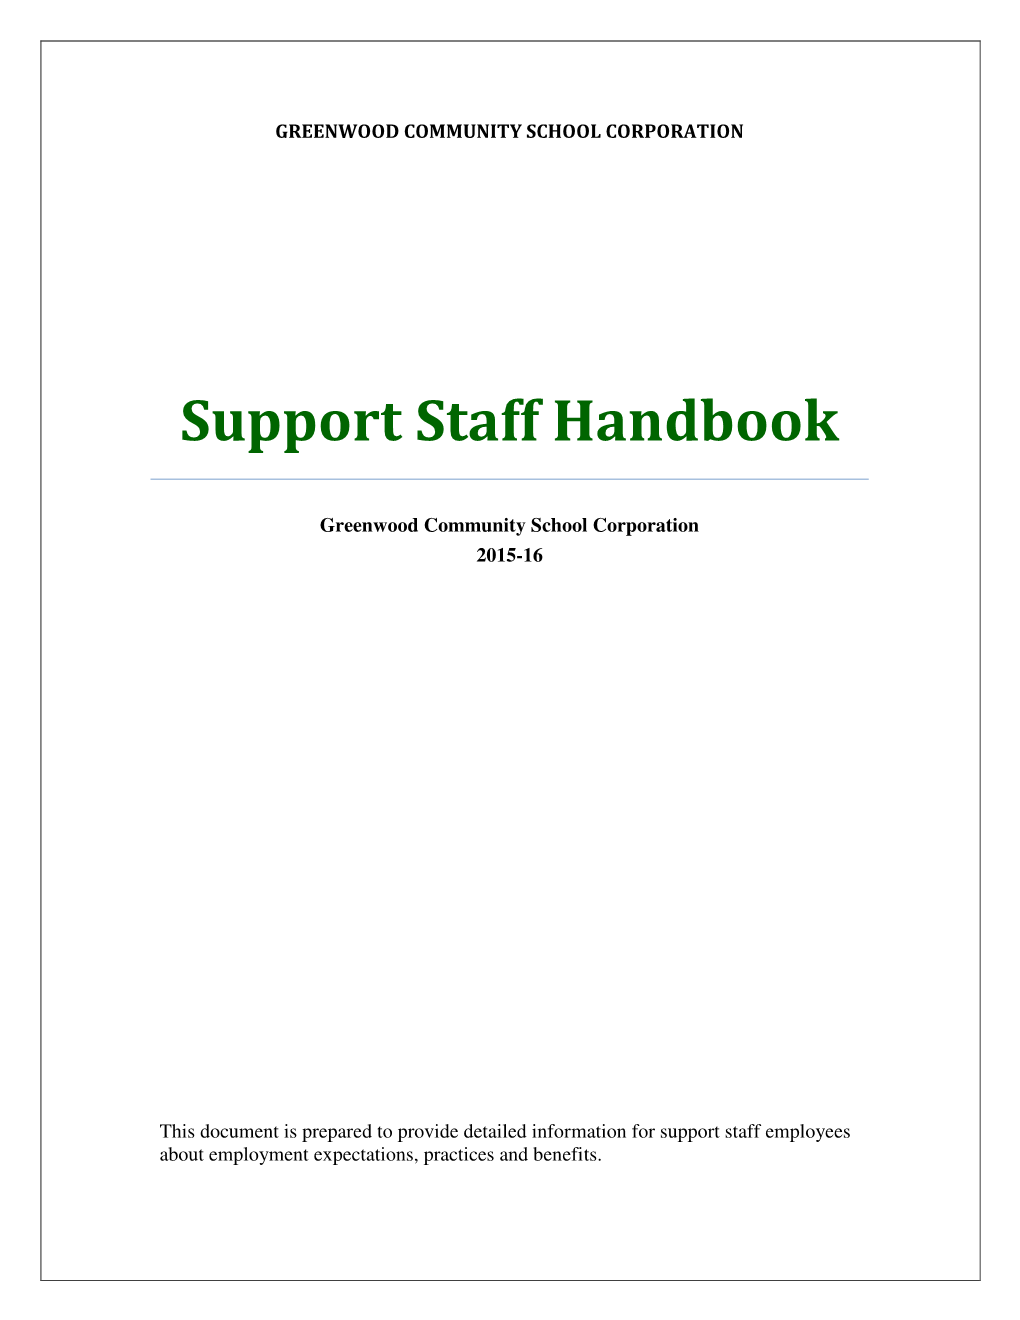 Support Staff Handbook